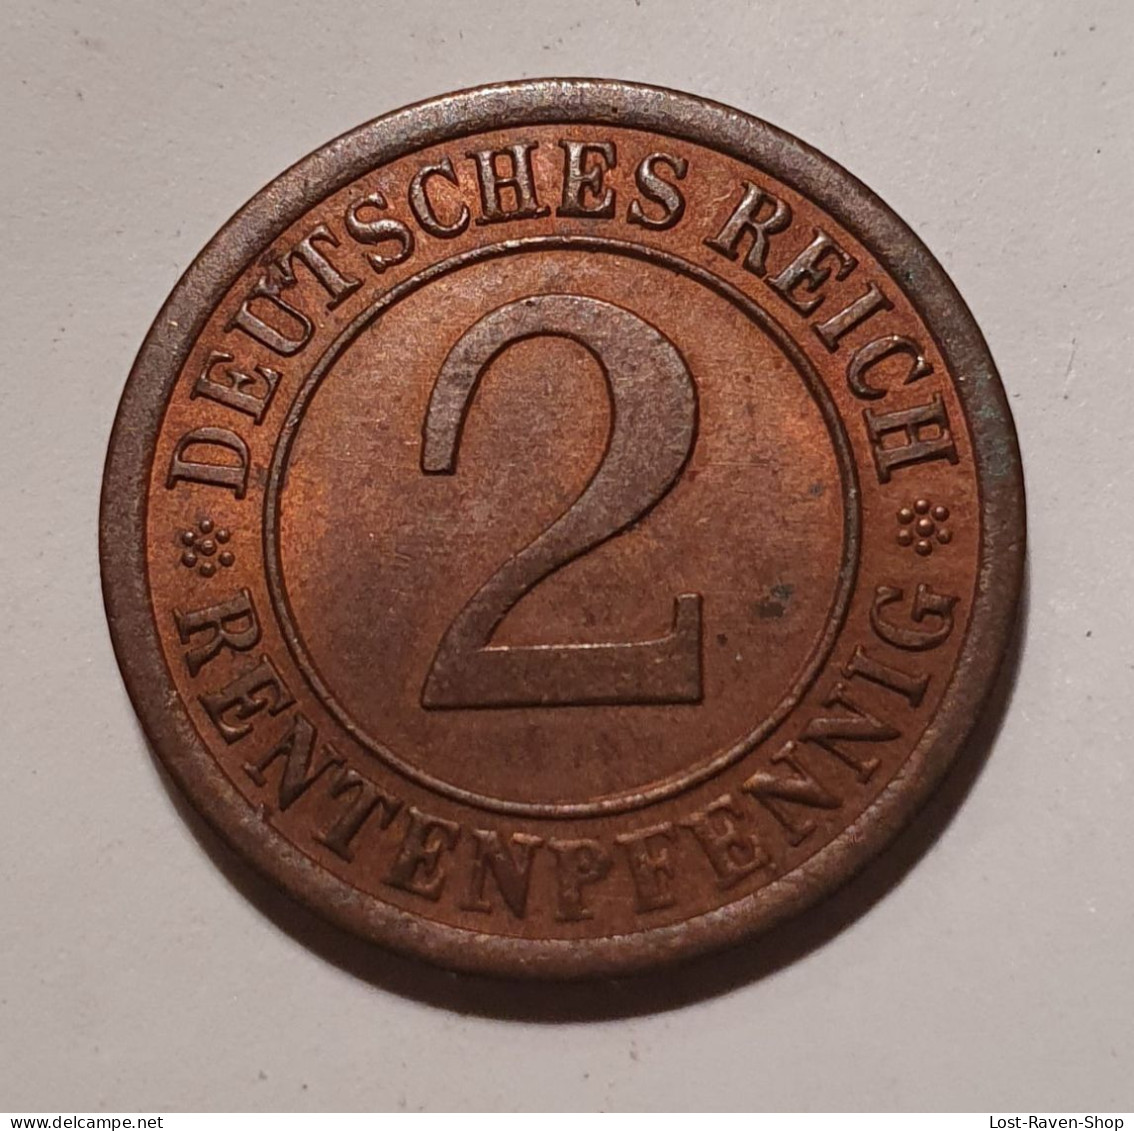 2 Rentenpfennig - Deutsches Reich - 1923 - 2 Renten- & 2 Reichspfennig